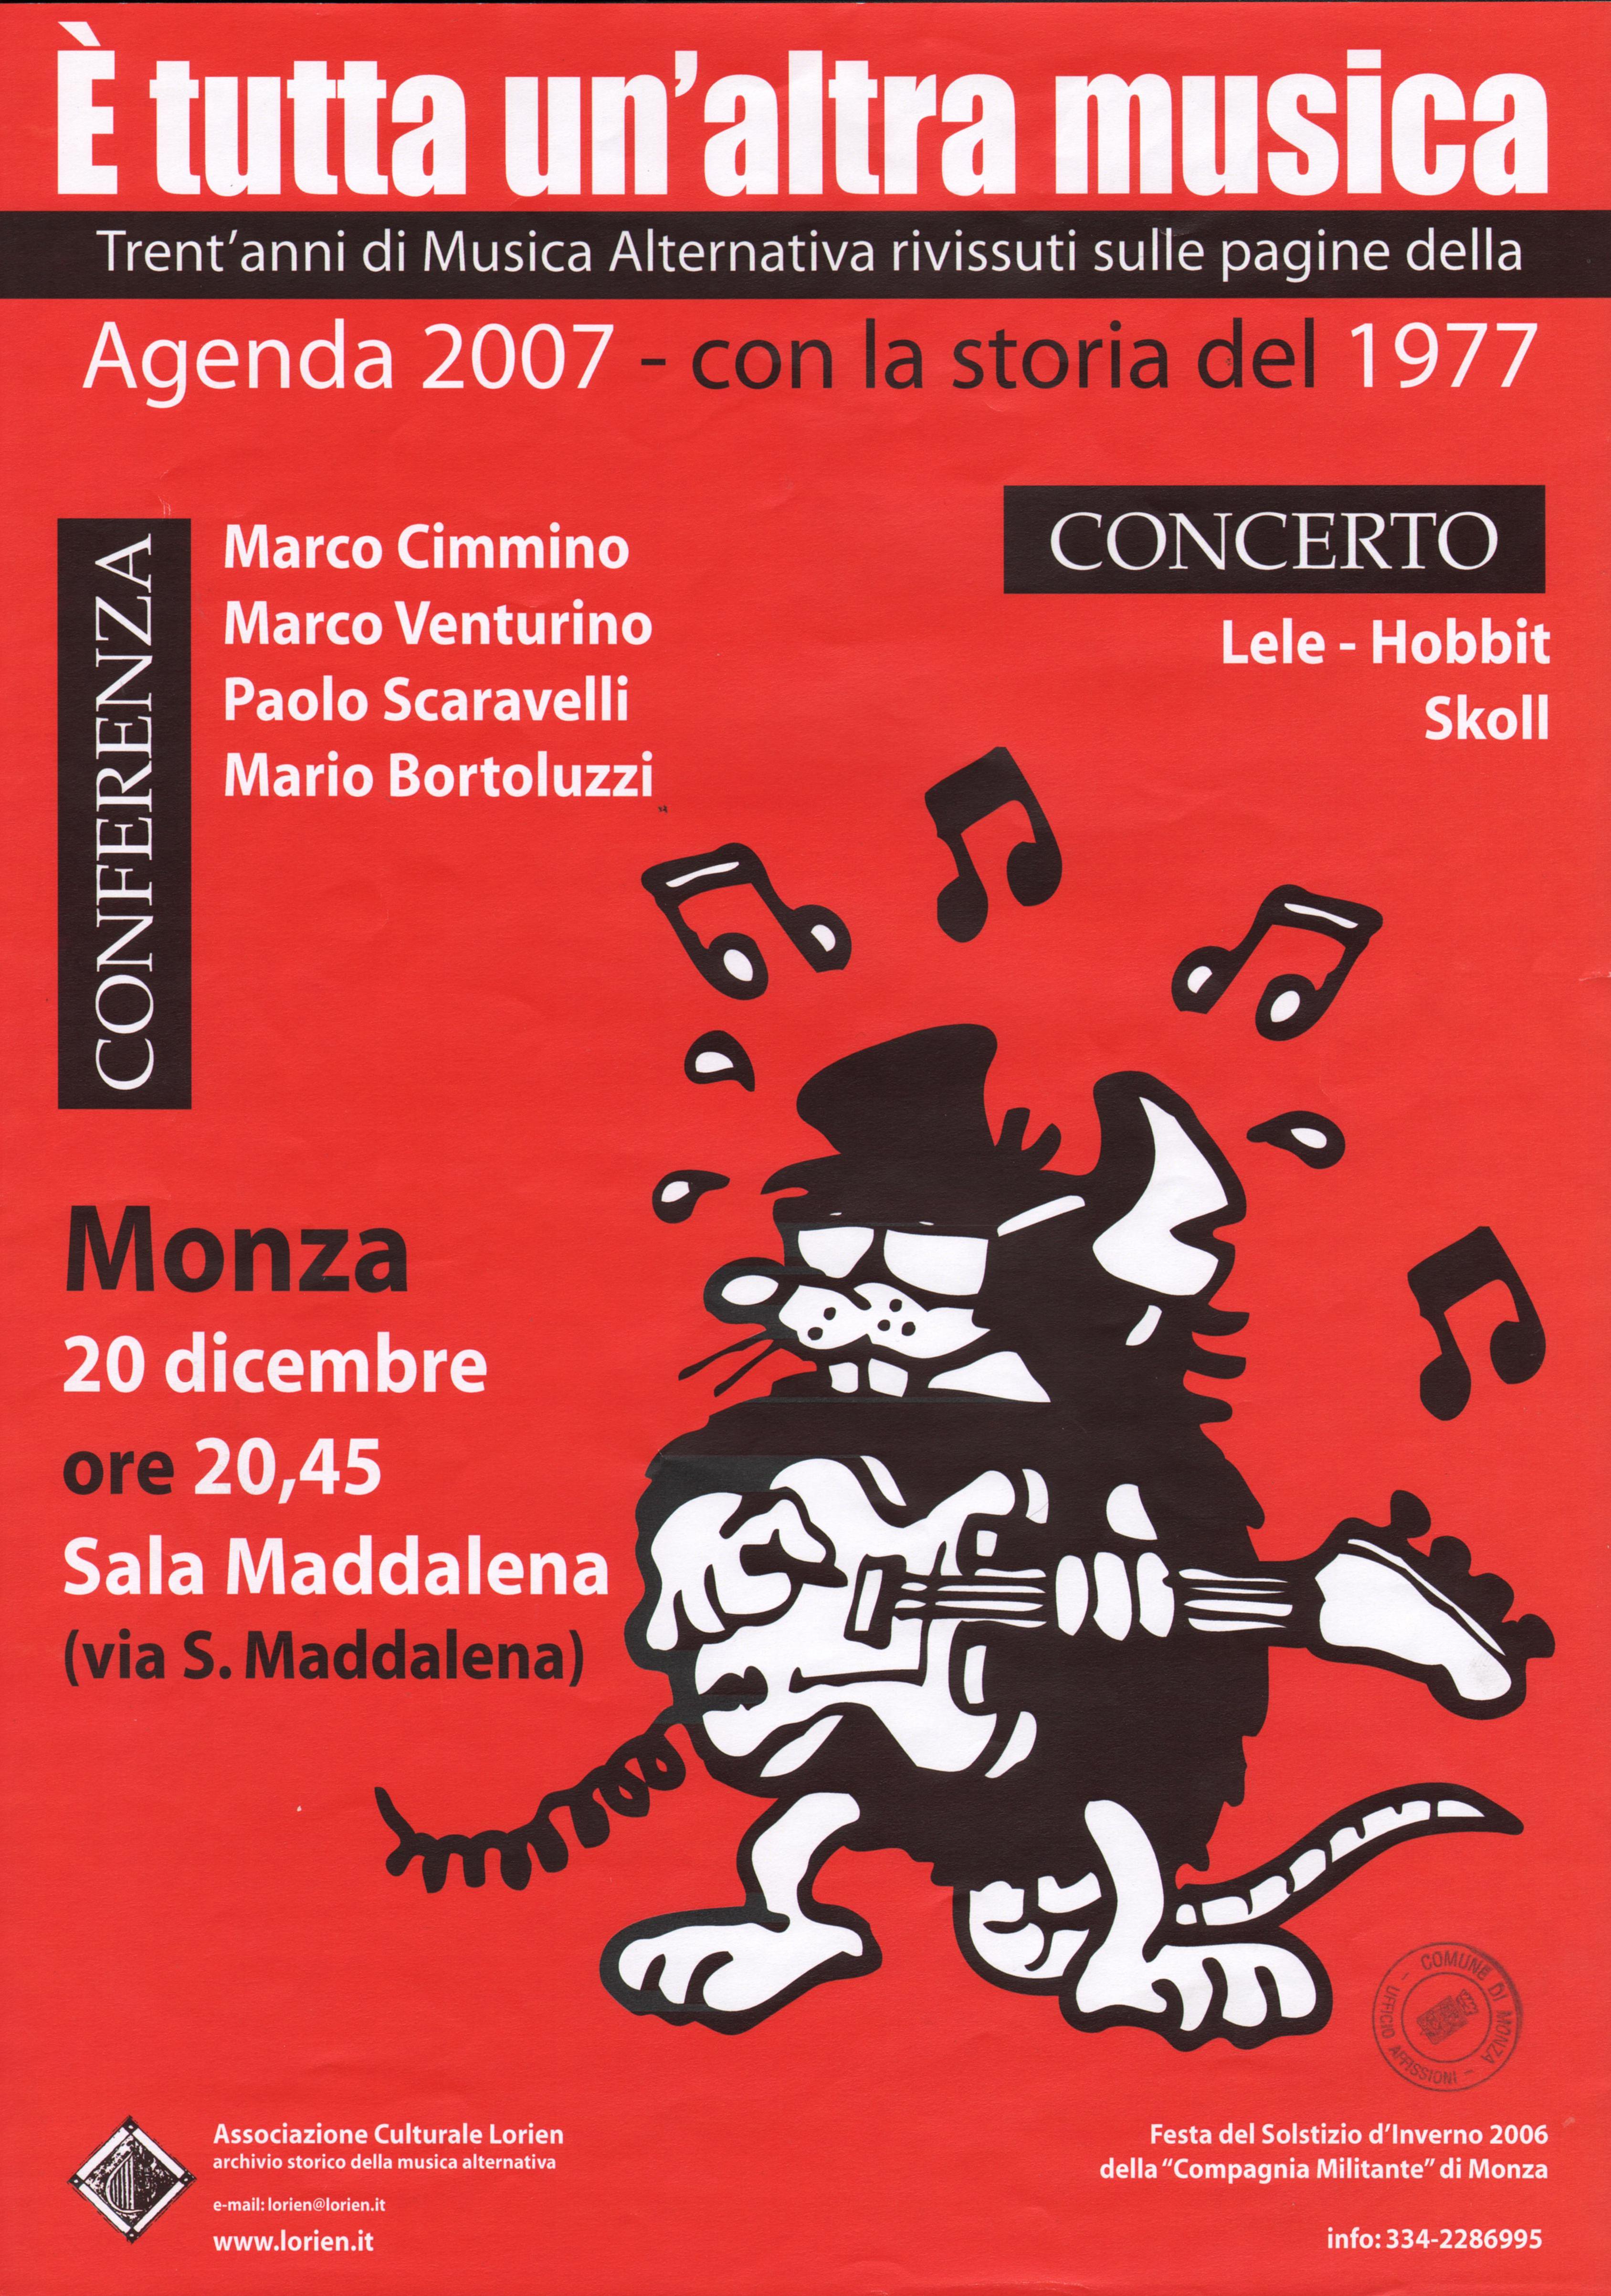 20 dicembre 2006 Monza - E' tutta un'altra musica